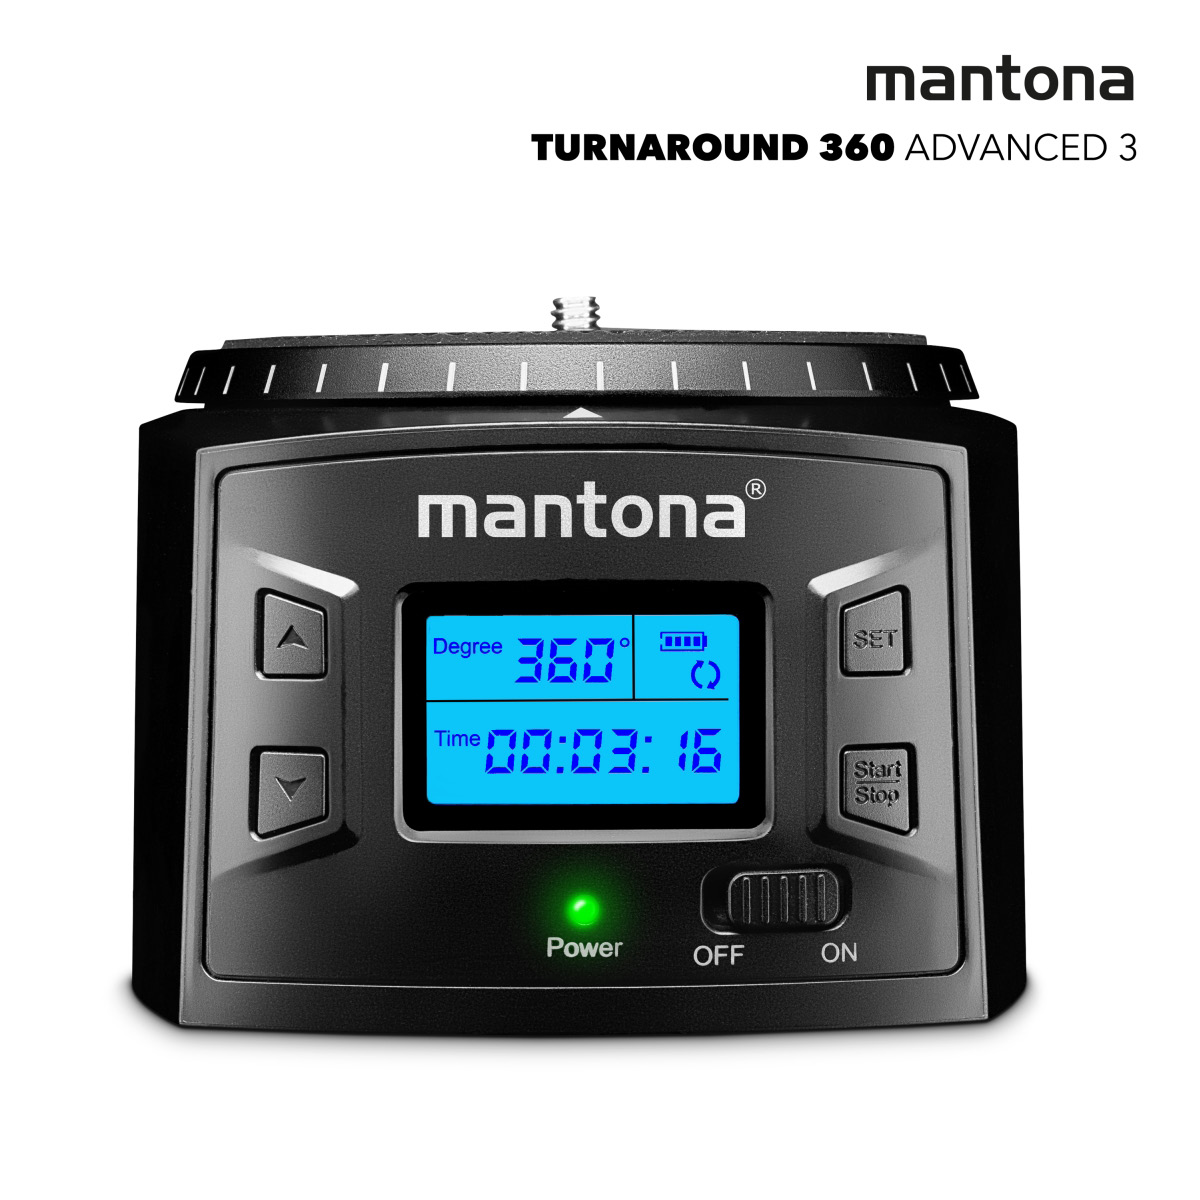 Mantona Turnaround 360 Advanced 3